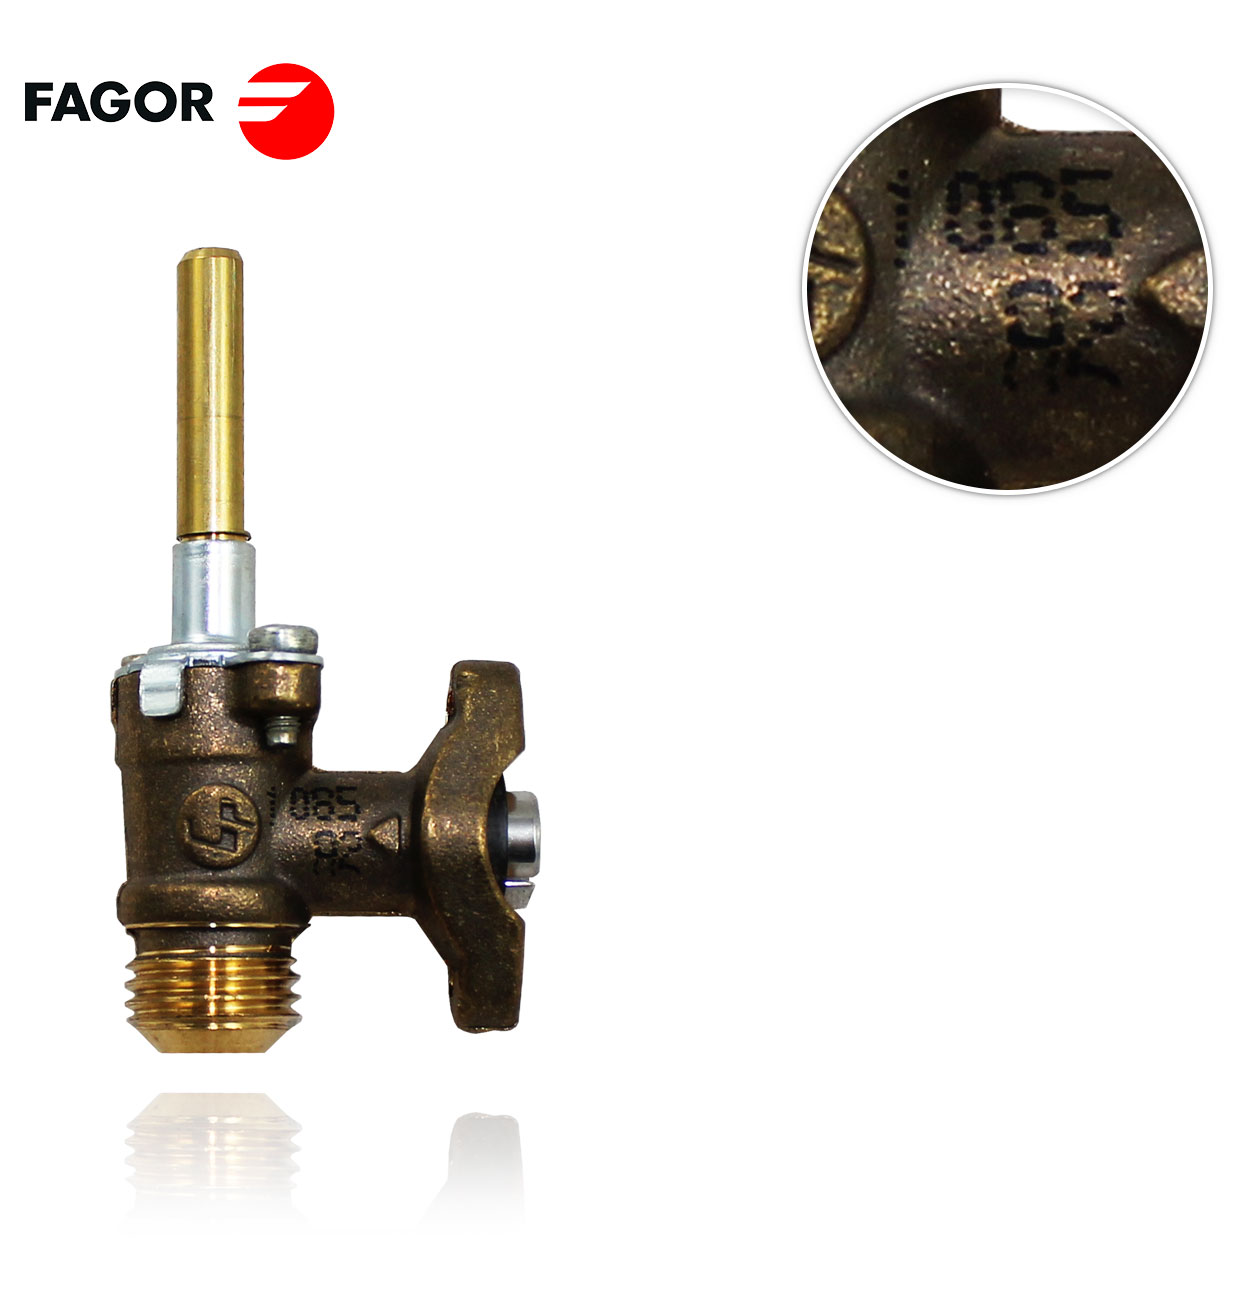 GRIFO GAS FAGOR C15C000A8